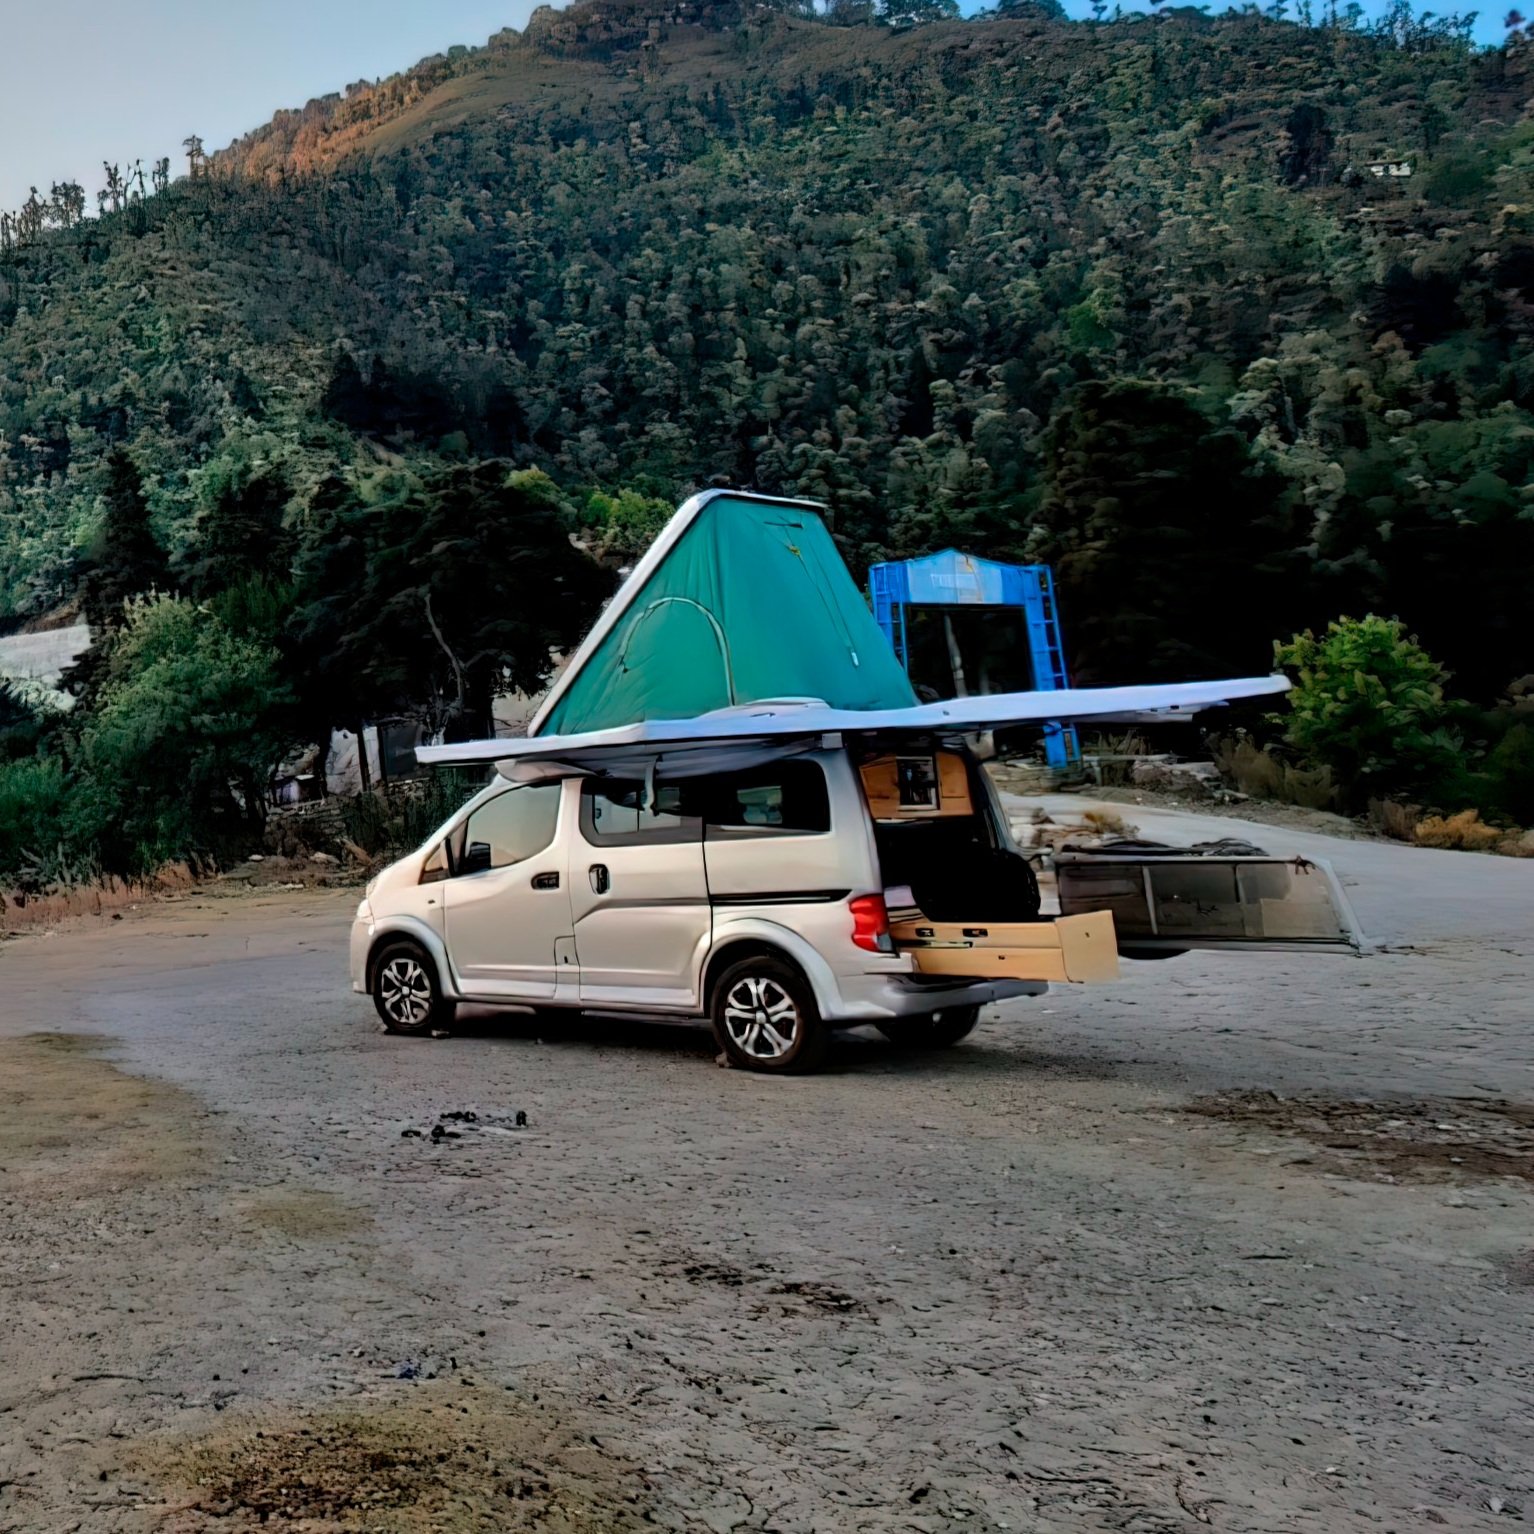 1Mahindra+Bolerocompany+camping+indiafin-gigapixel-art-height-2500px-cropped.jpg